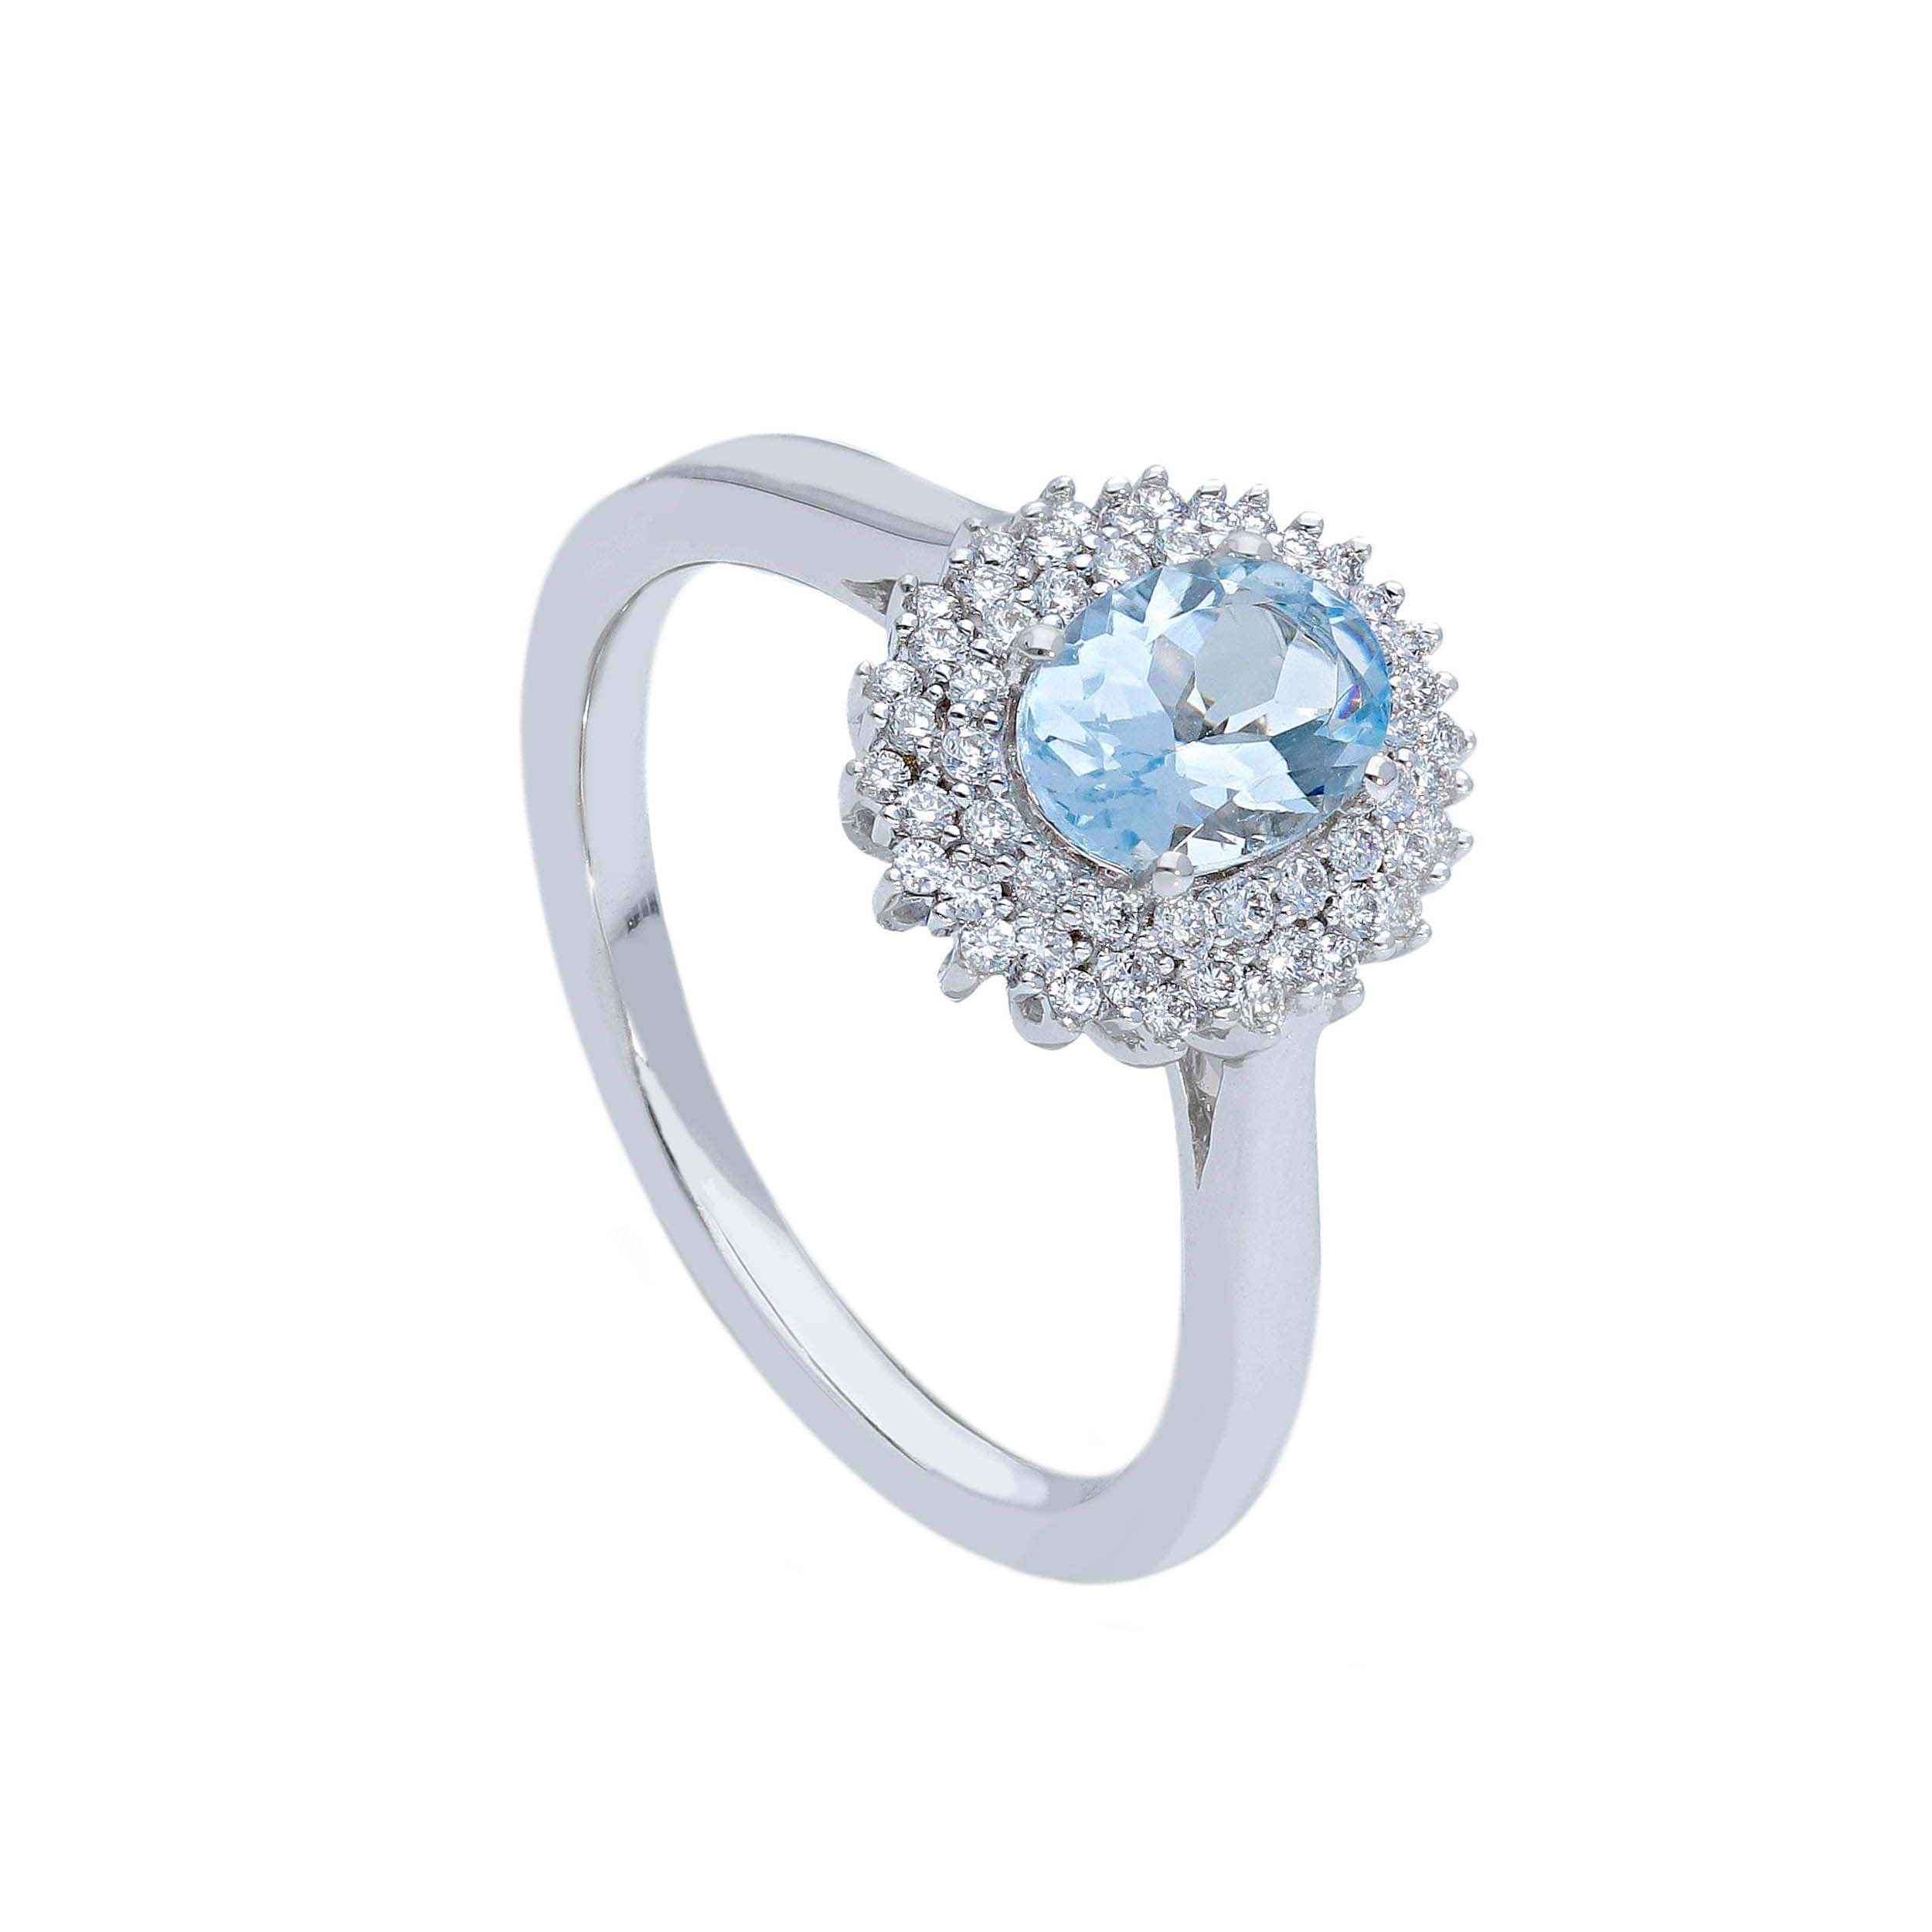 Aquamarine and diamond ring Art.254189